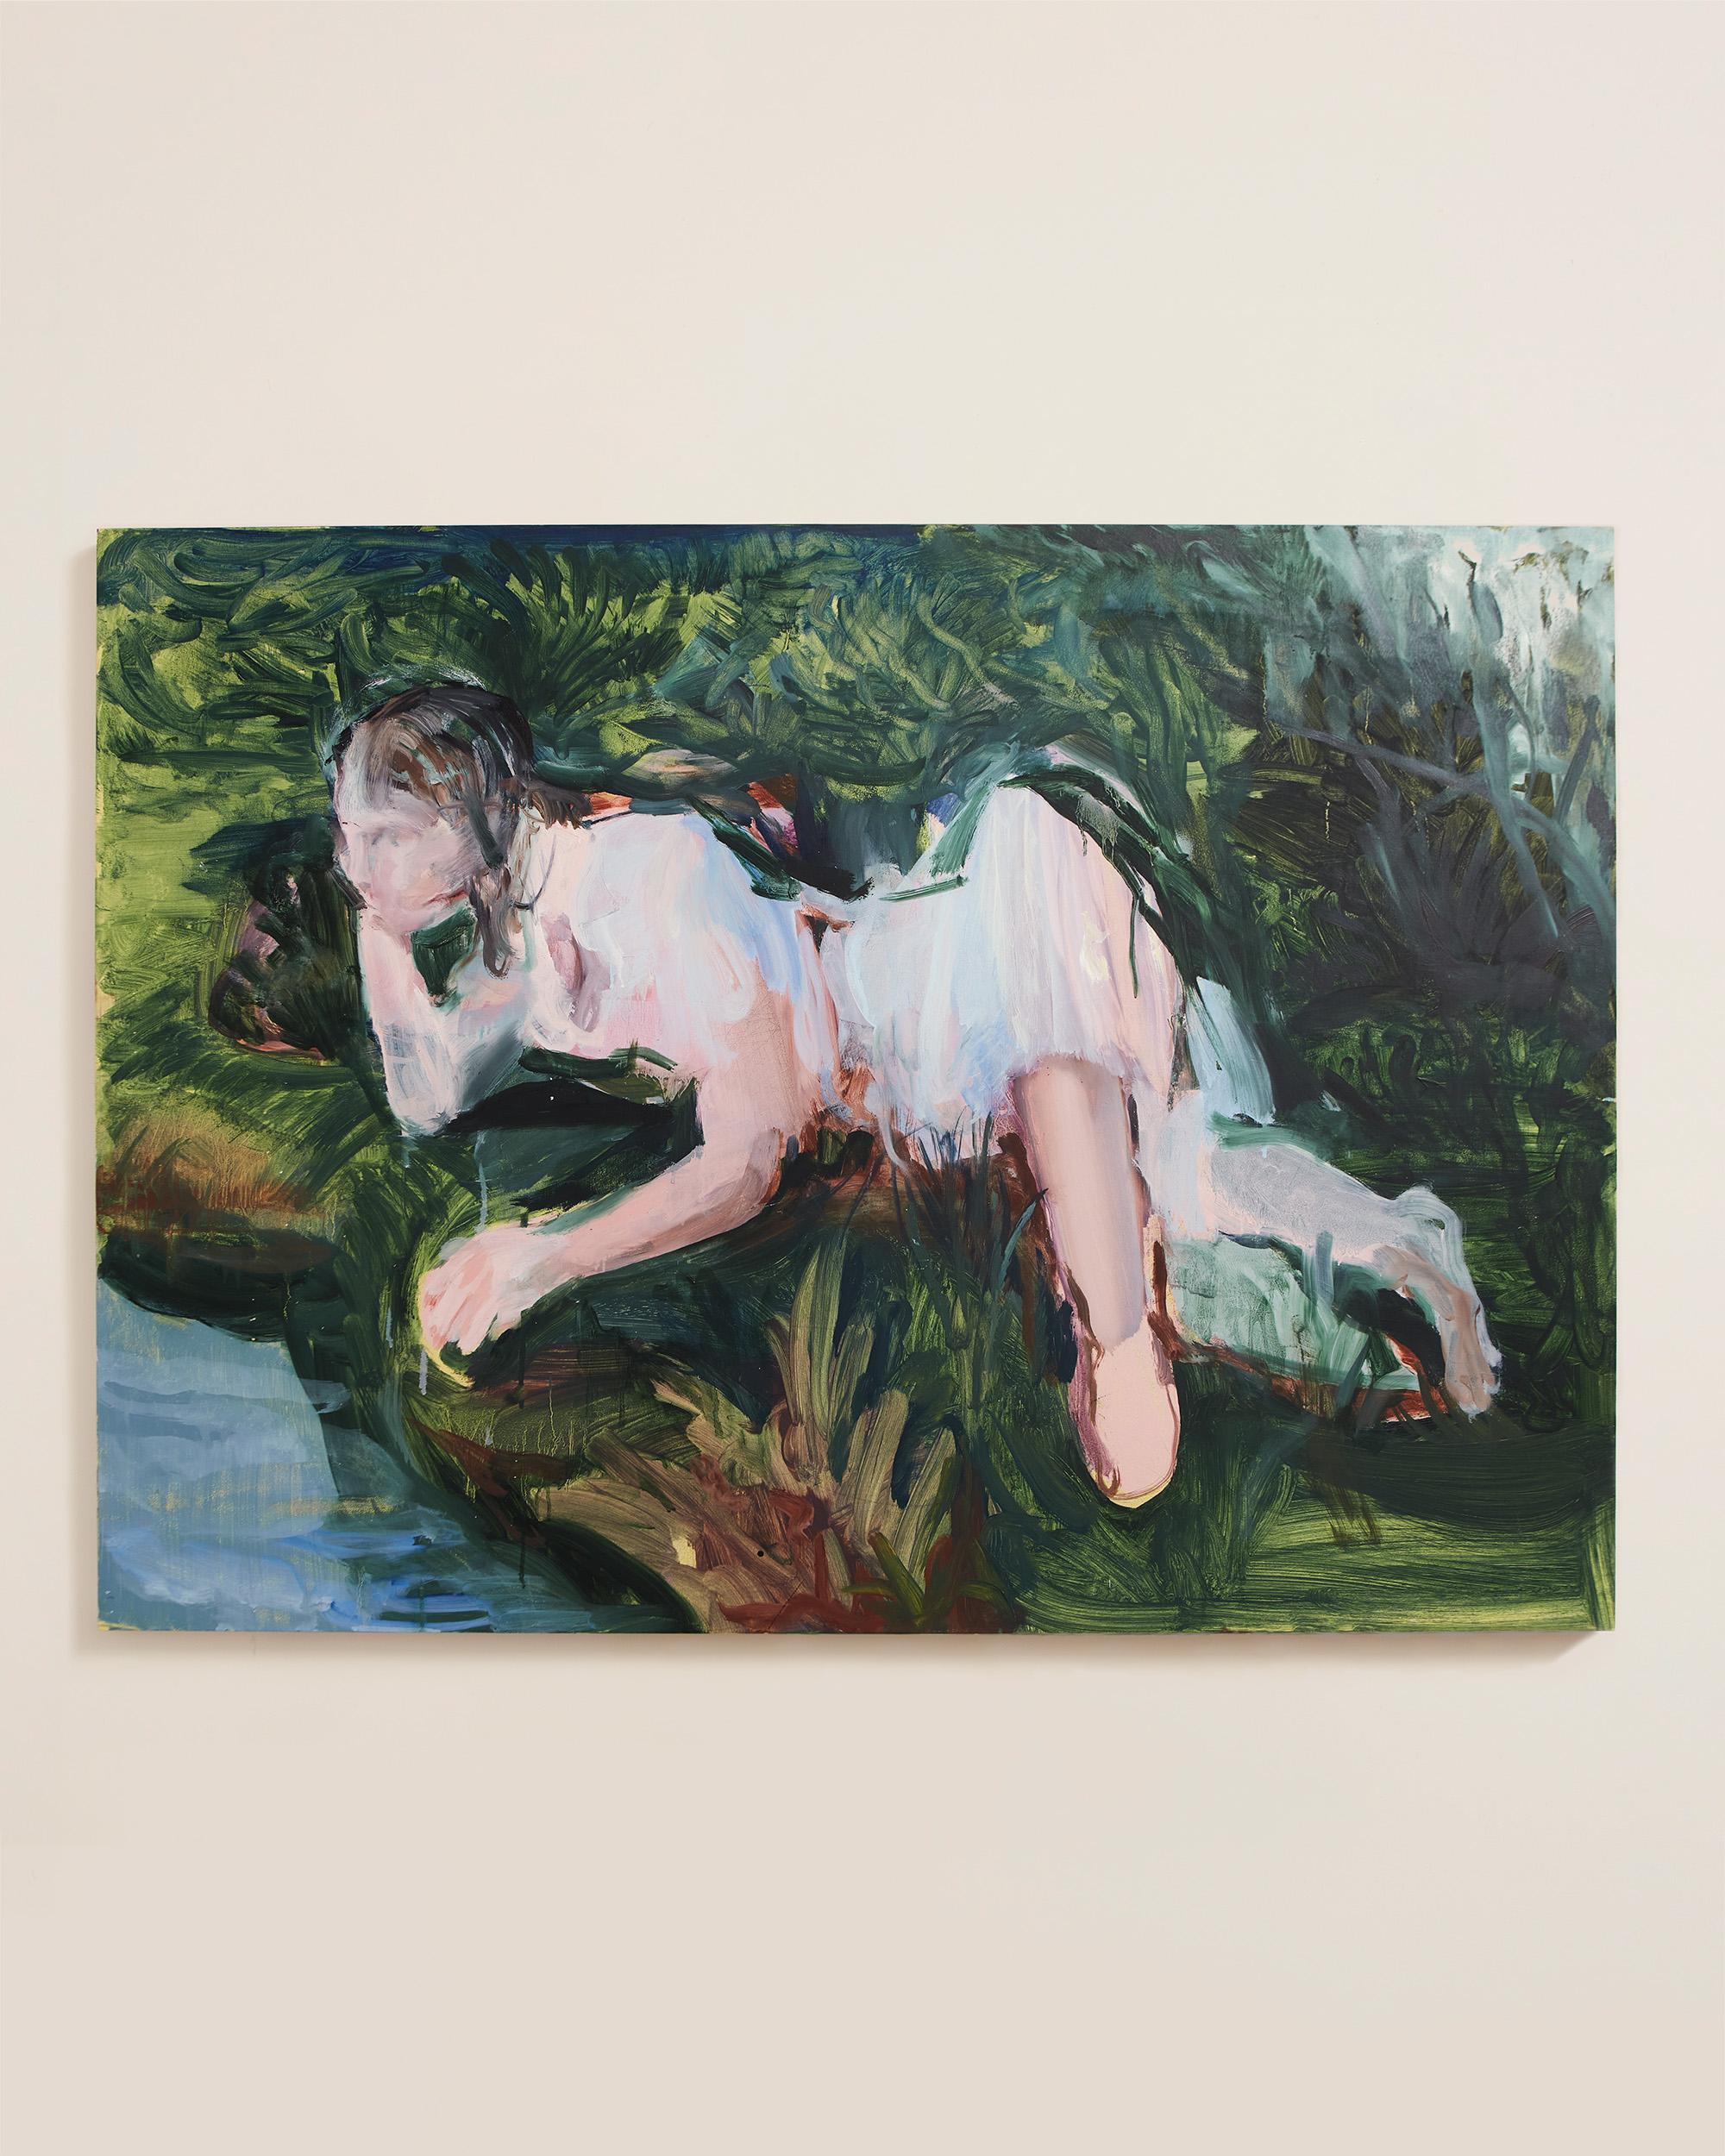 Etienne François Nude Painting - Jeune fille au bord de l'eau - Contemporary Oil On Canvas Portrait, 2018